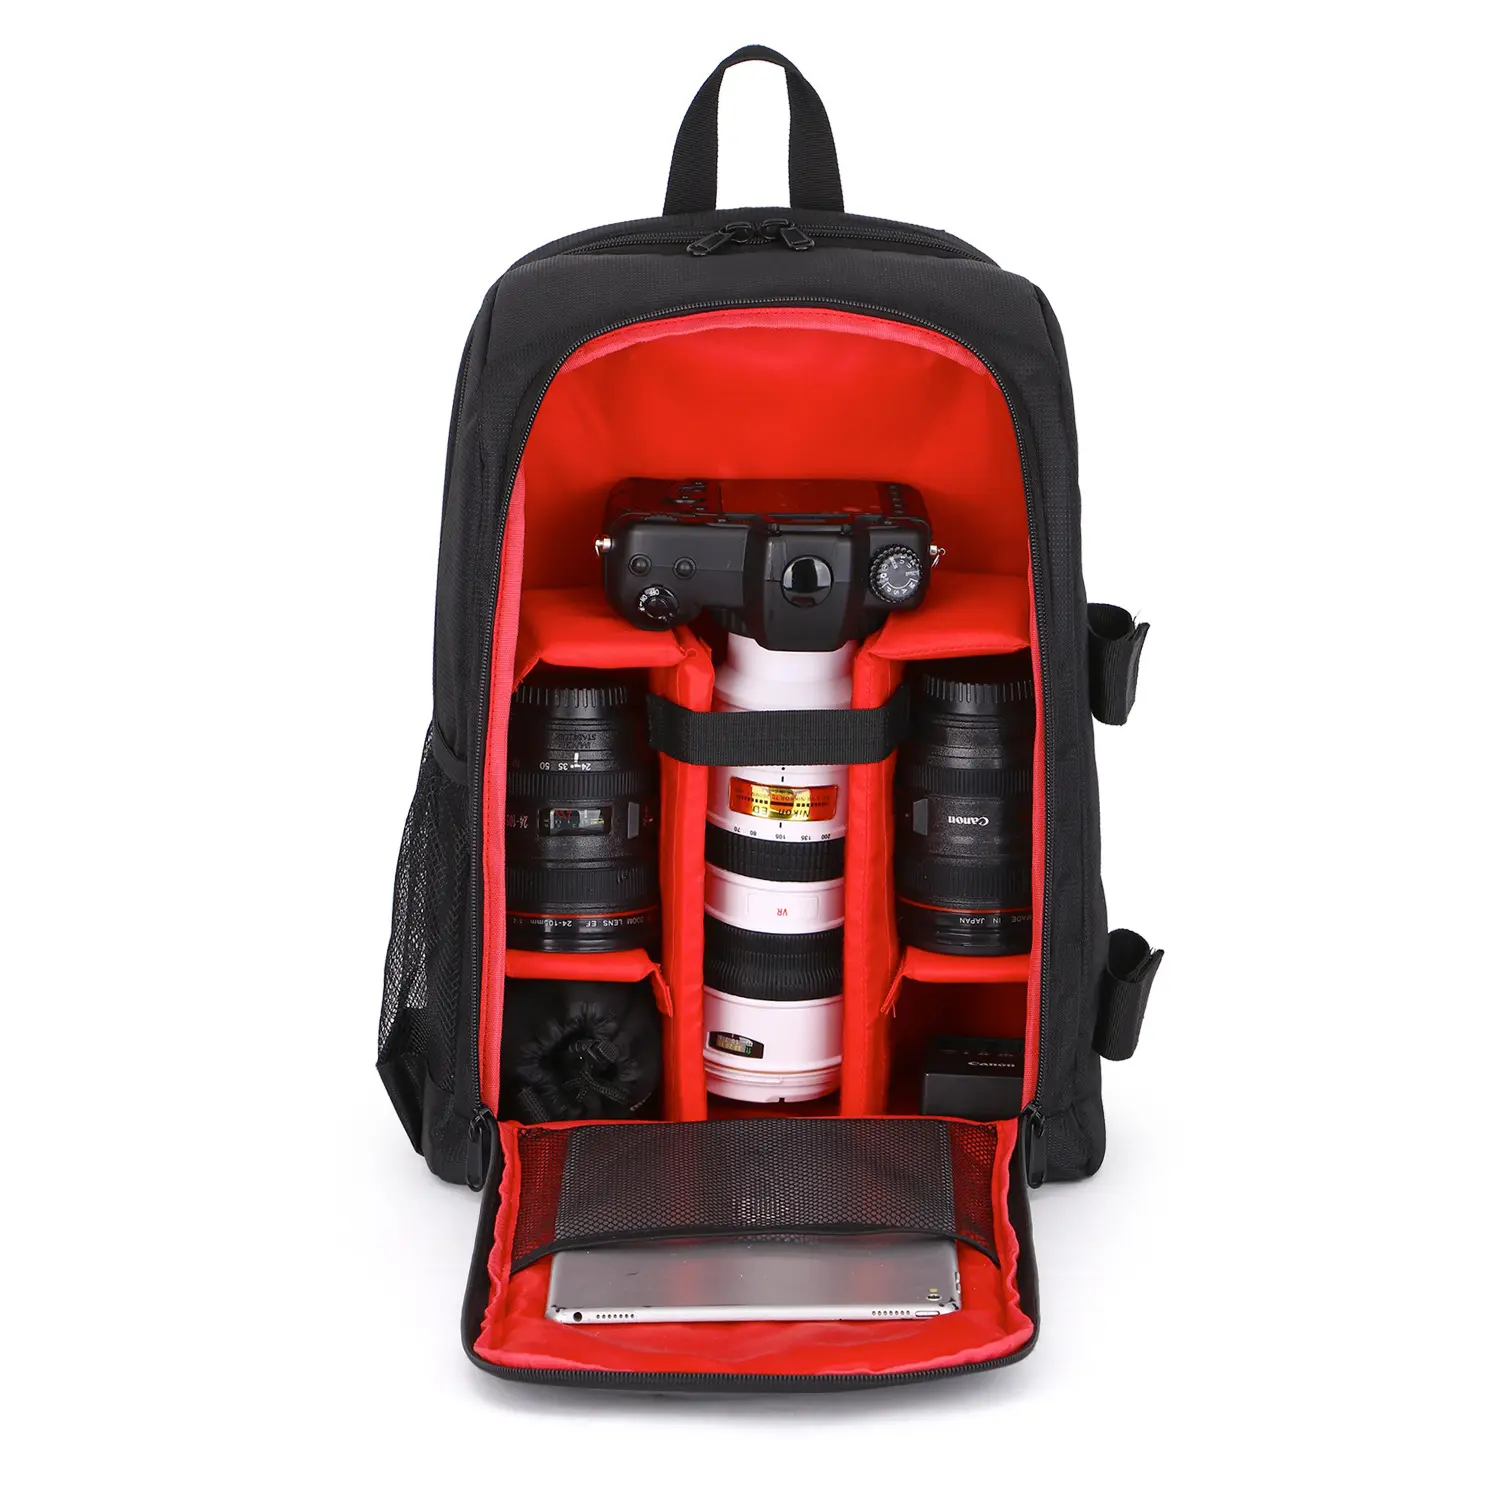 REAL FORT OEM ODM beg camera digital single lens reflex carrier backpack load shedding high quality nylon dslr camera bag